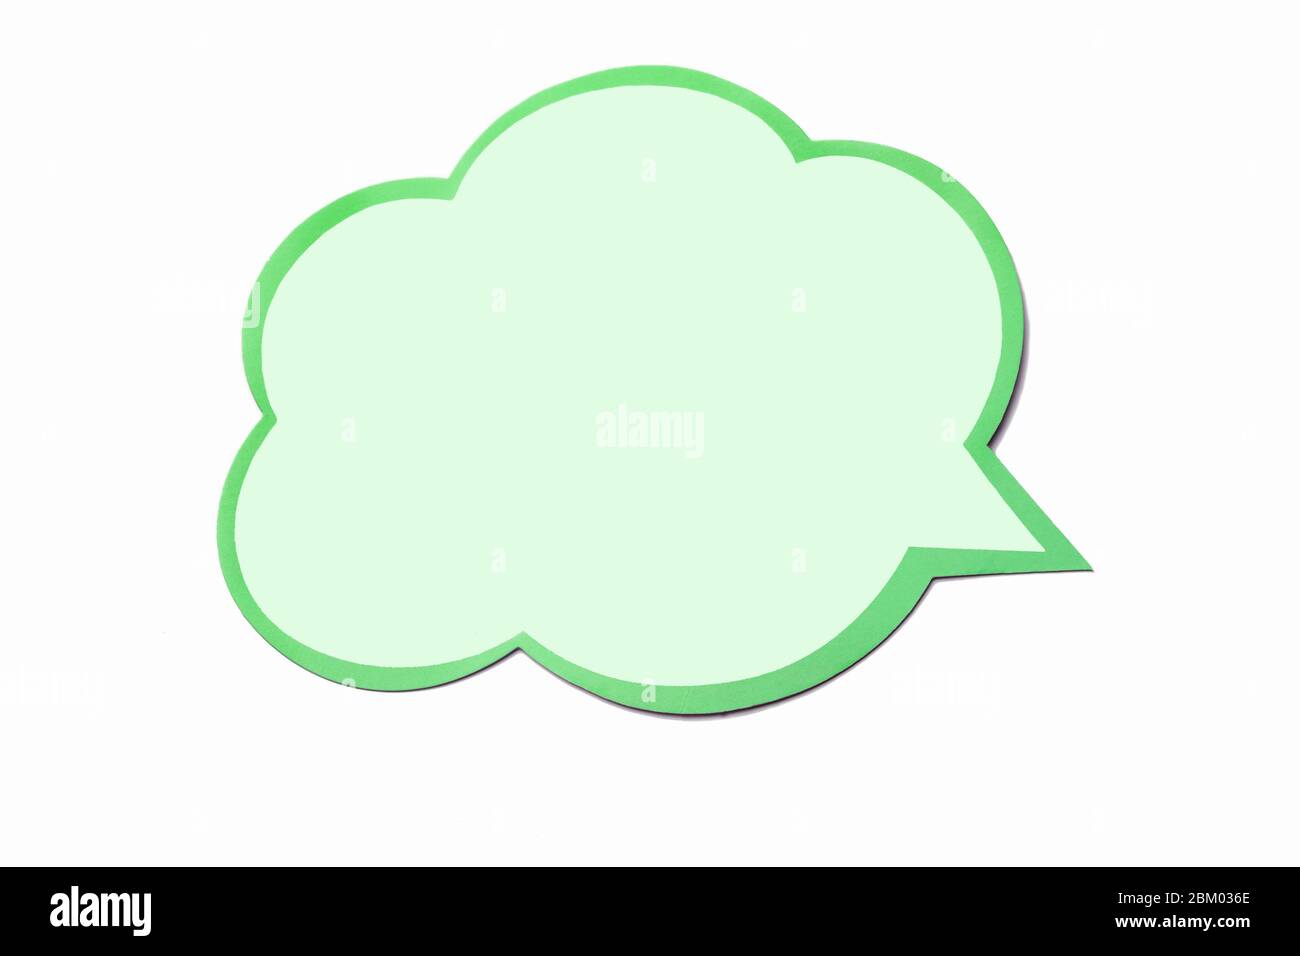 Burbuja de habla de oliva como una nube con borde verde claro aislado sobre fondo blanco vacío. Espacio de copia Foto de stock